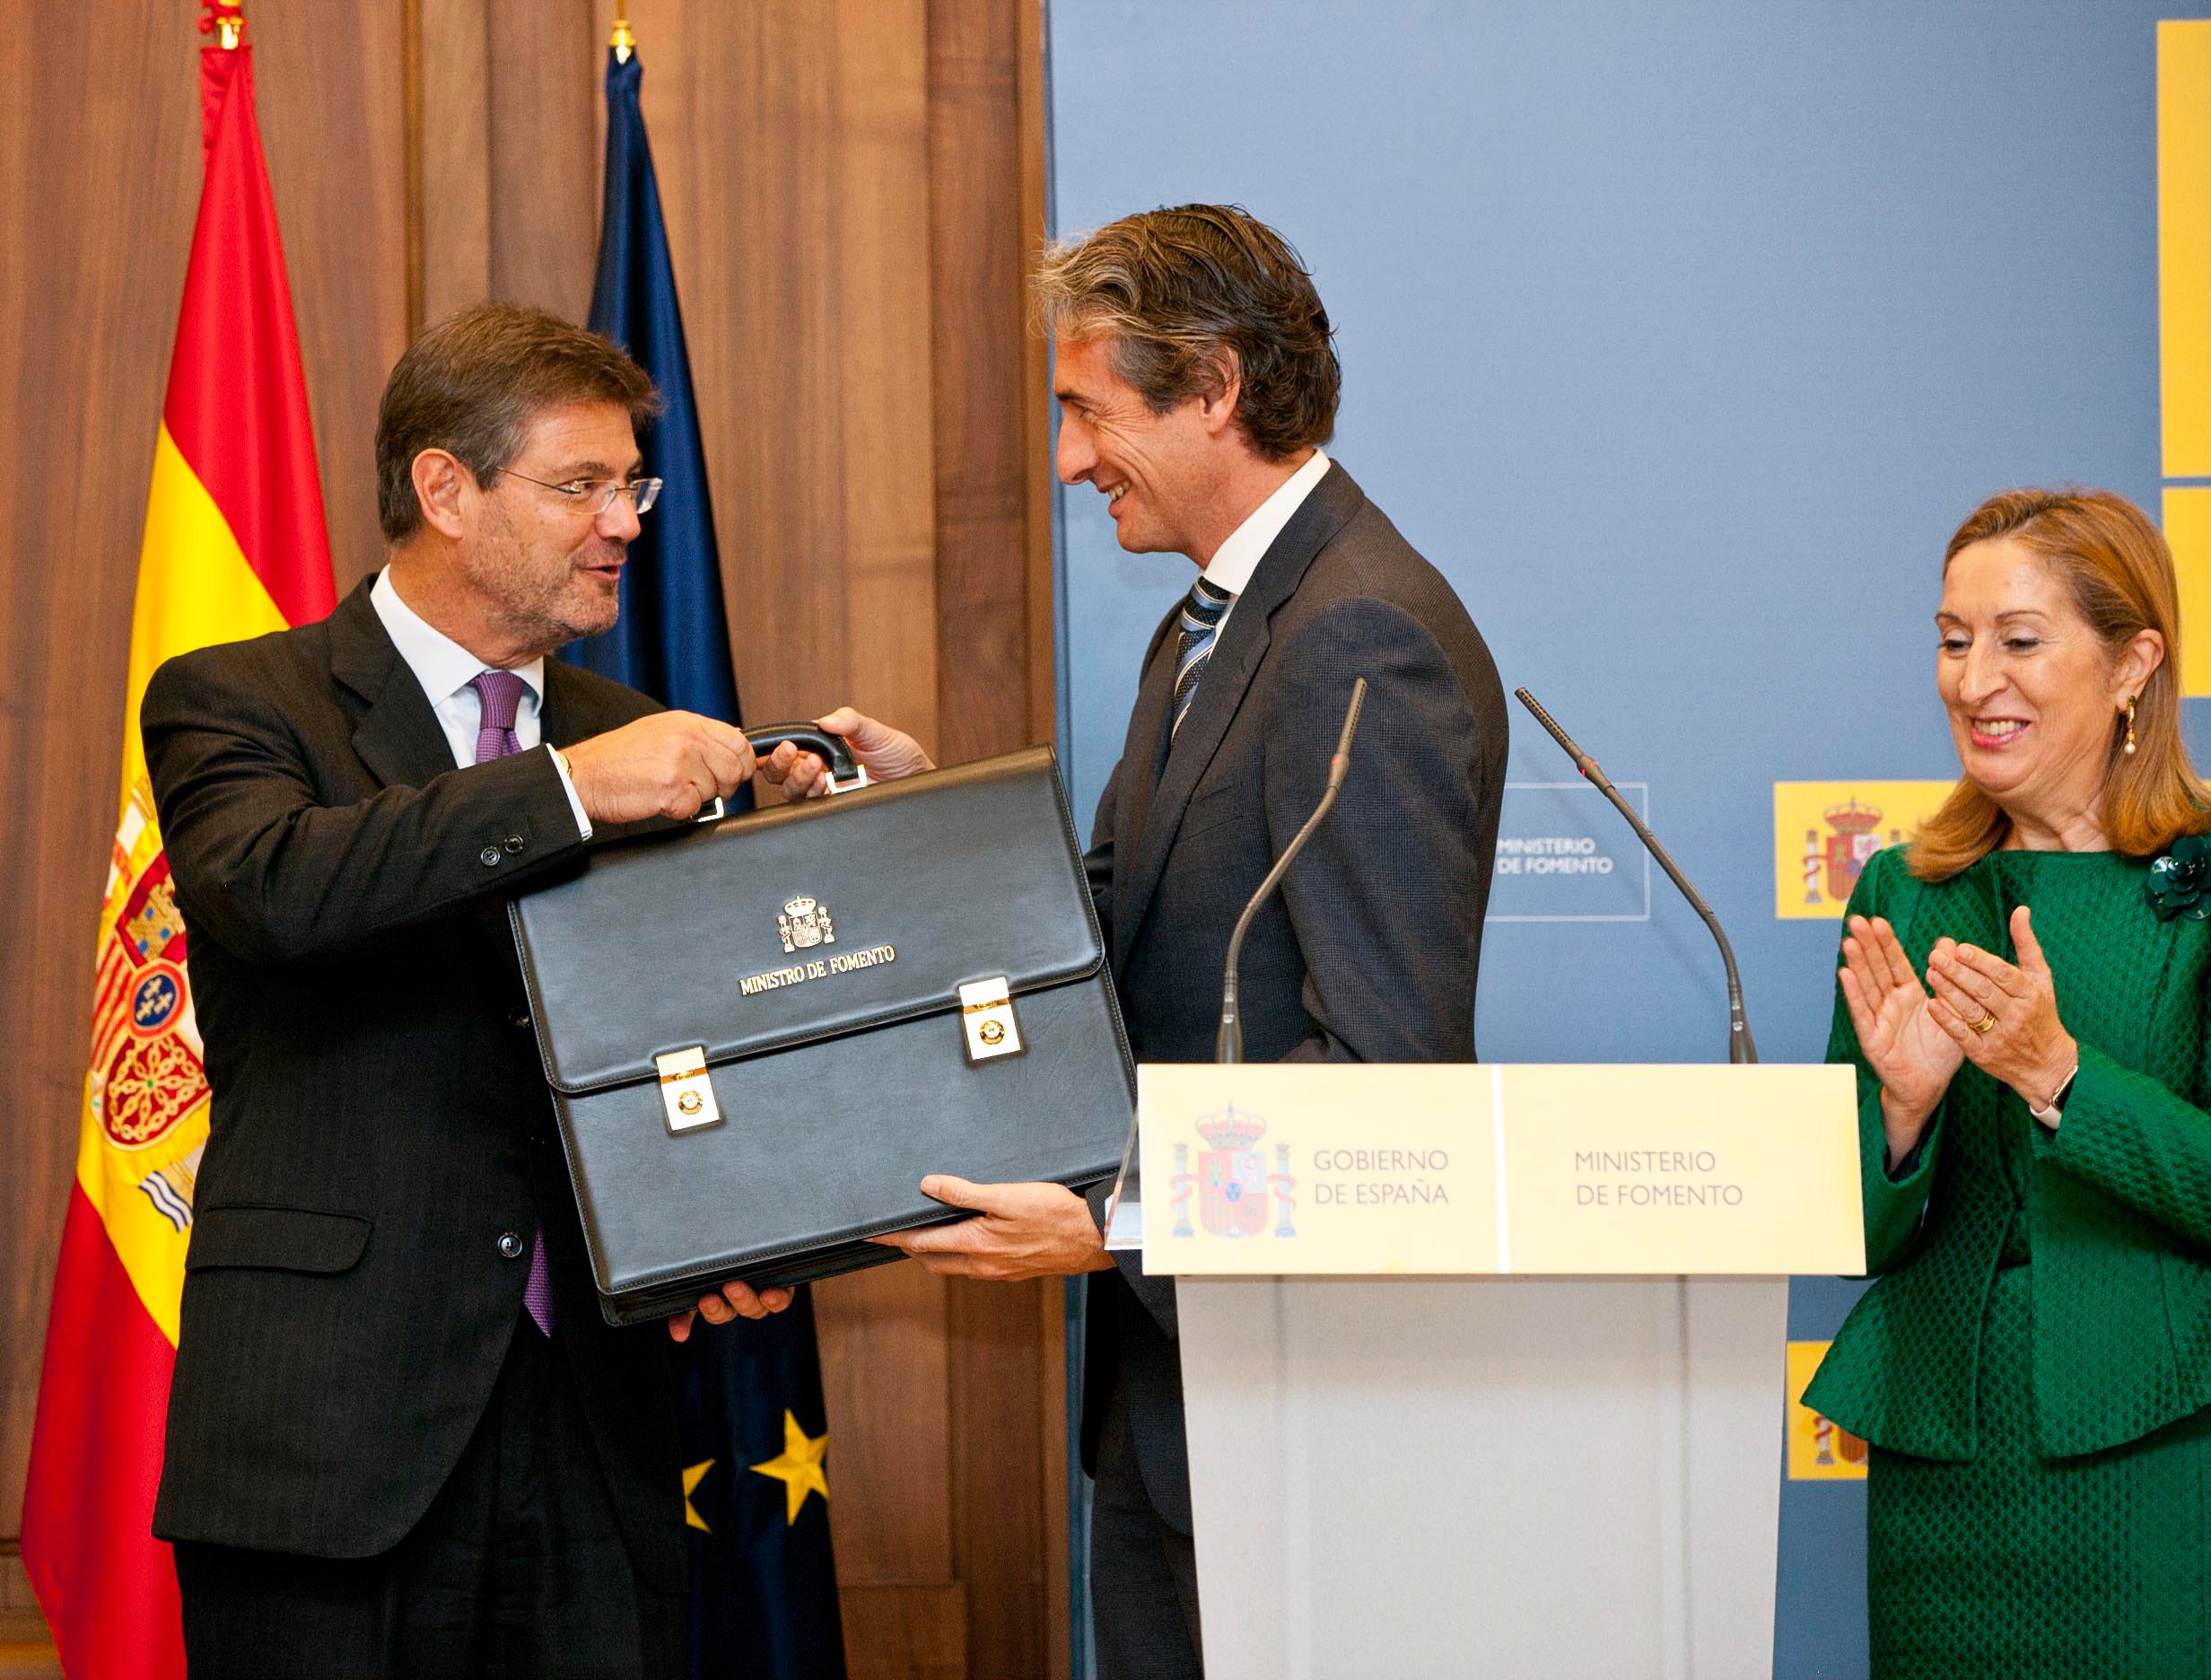 Rafael Catalá entrega la cartera de Ministro de Fomento a Íñigo de la Serna en presencia de Ana Pastor.